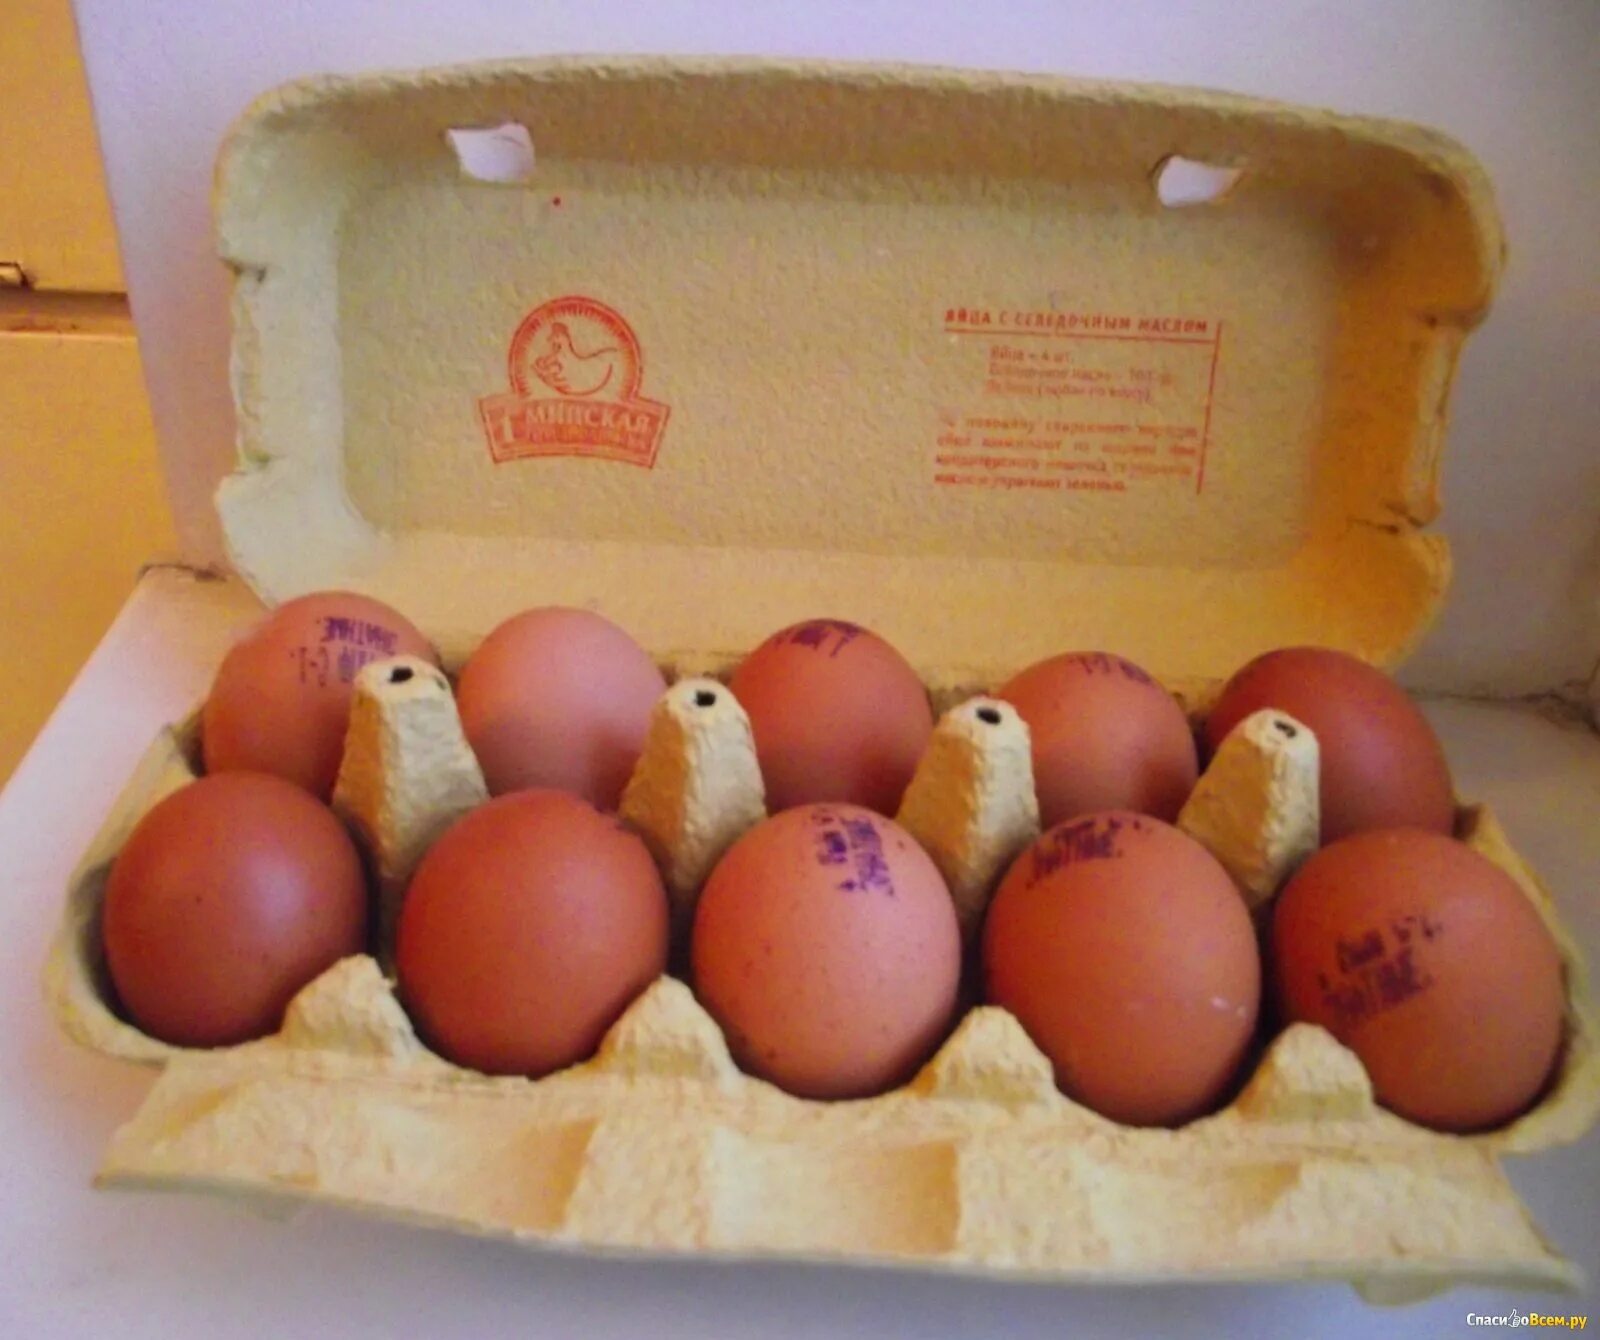 1 минская птицефабрика. Обогащенные яйца. Яйца знатные. Яйцо обогащенное селеном. Яйцо куриное обогащенное селеном и йодом лента отзывы покупателей.